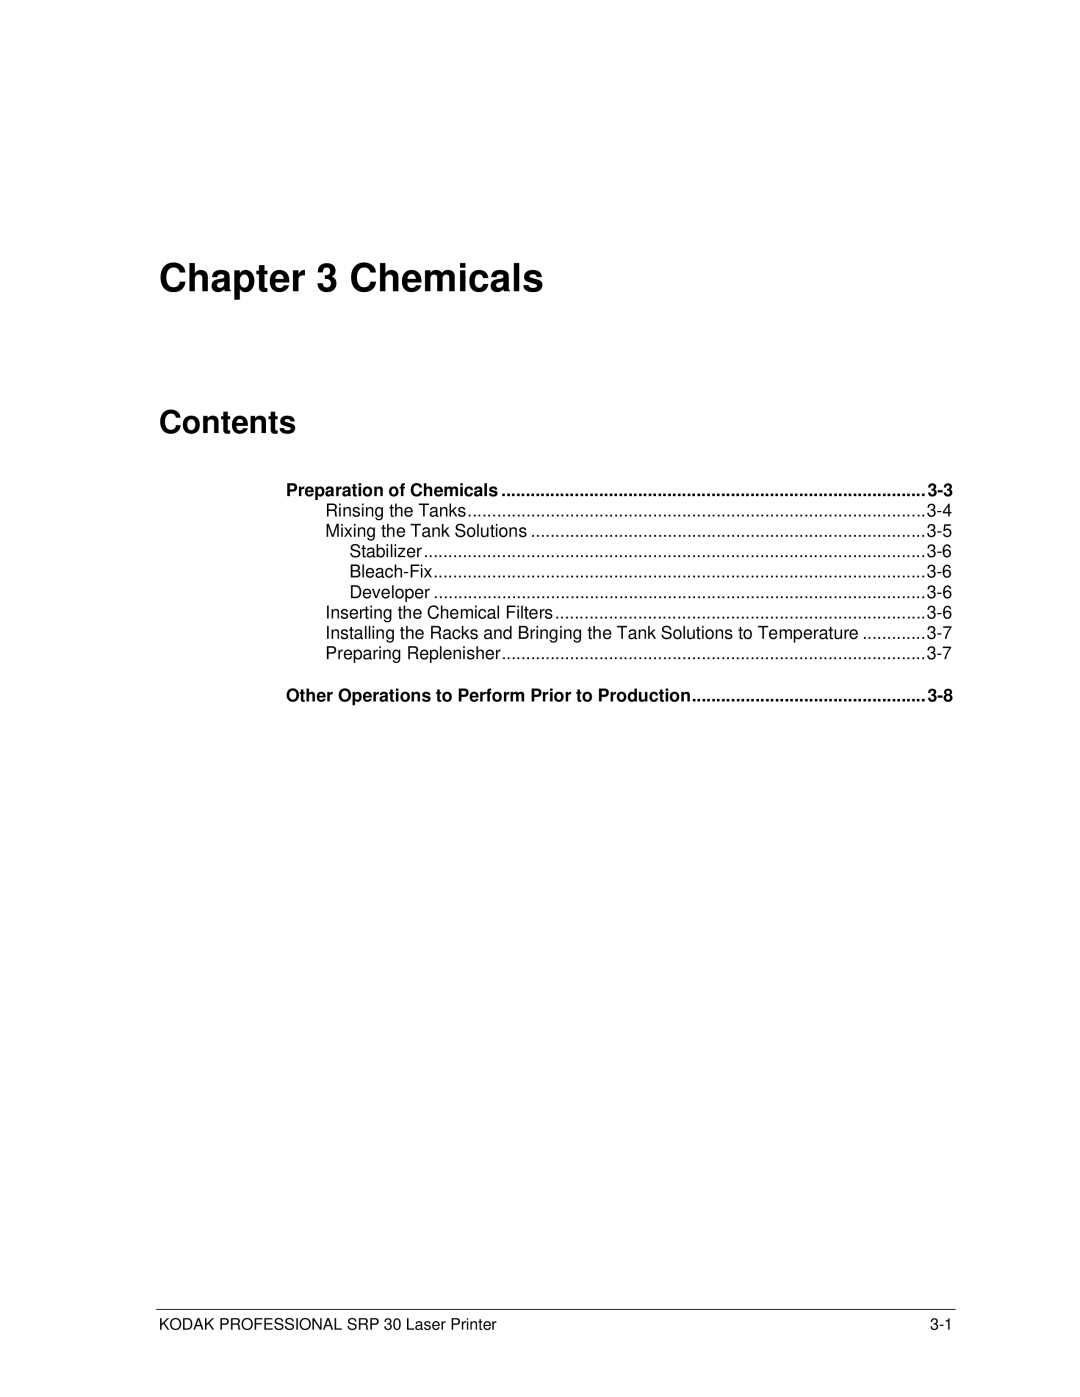 Kodak SRP 30 manual Chemicals 